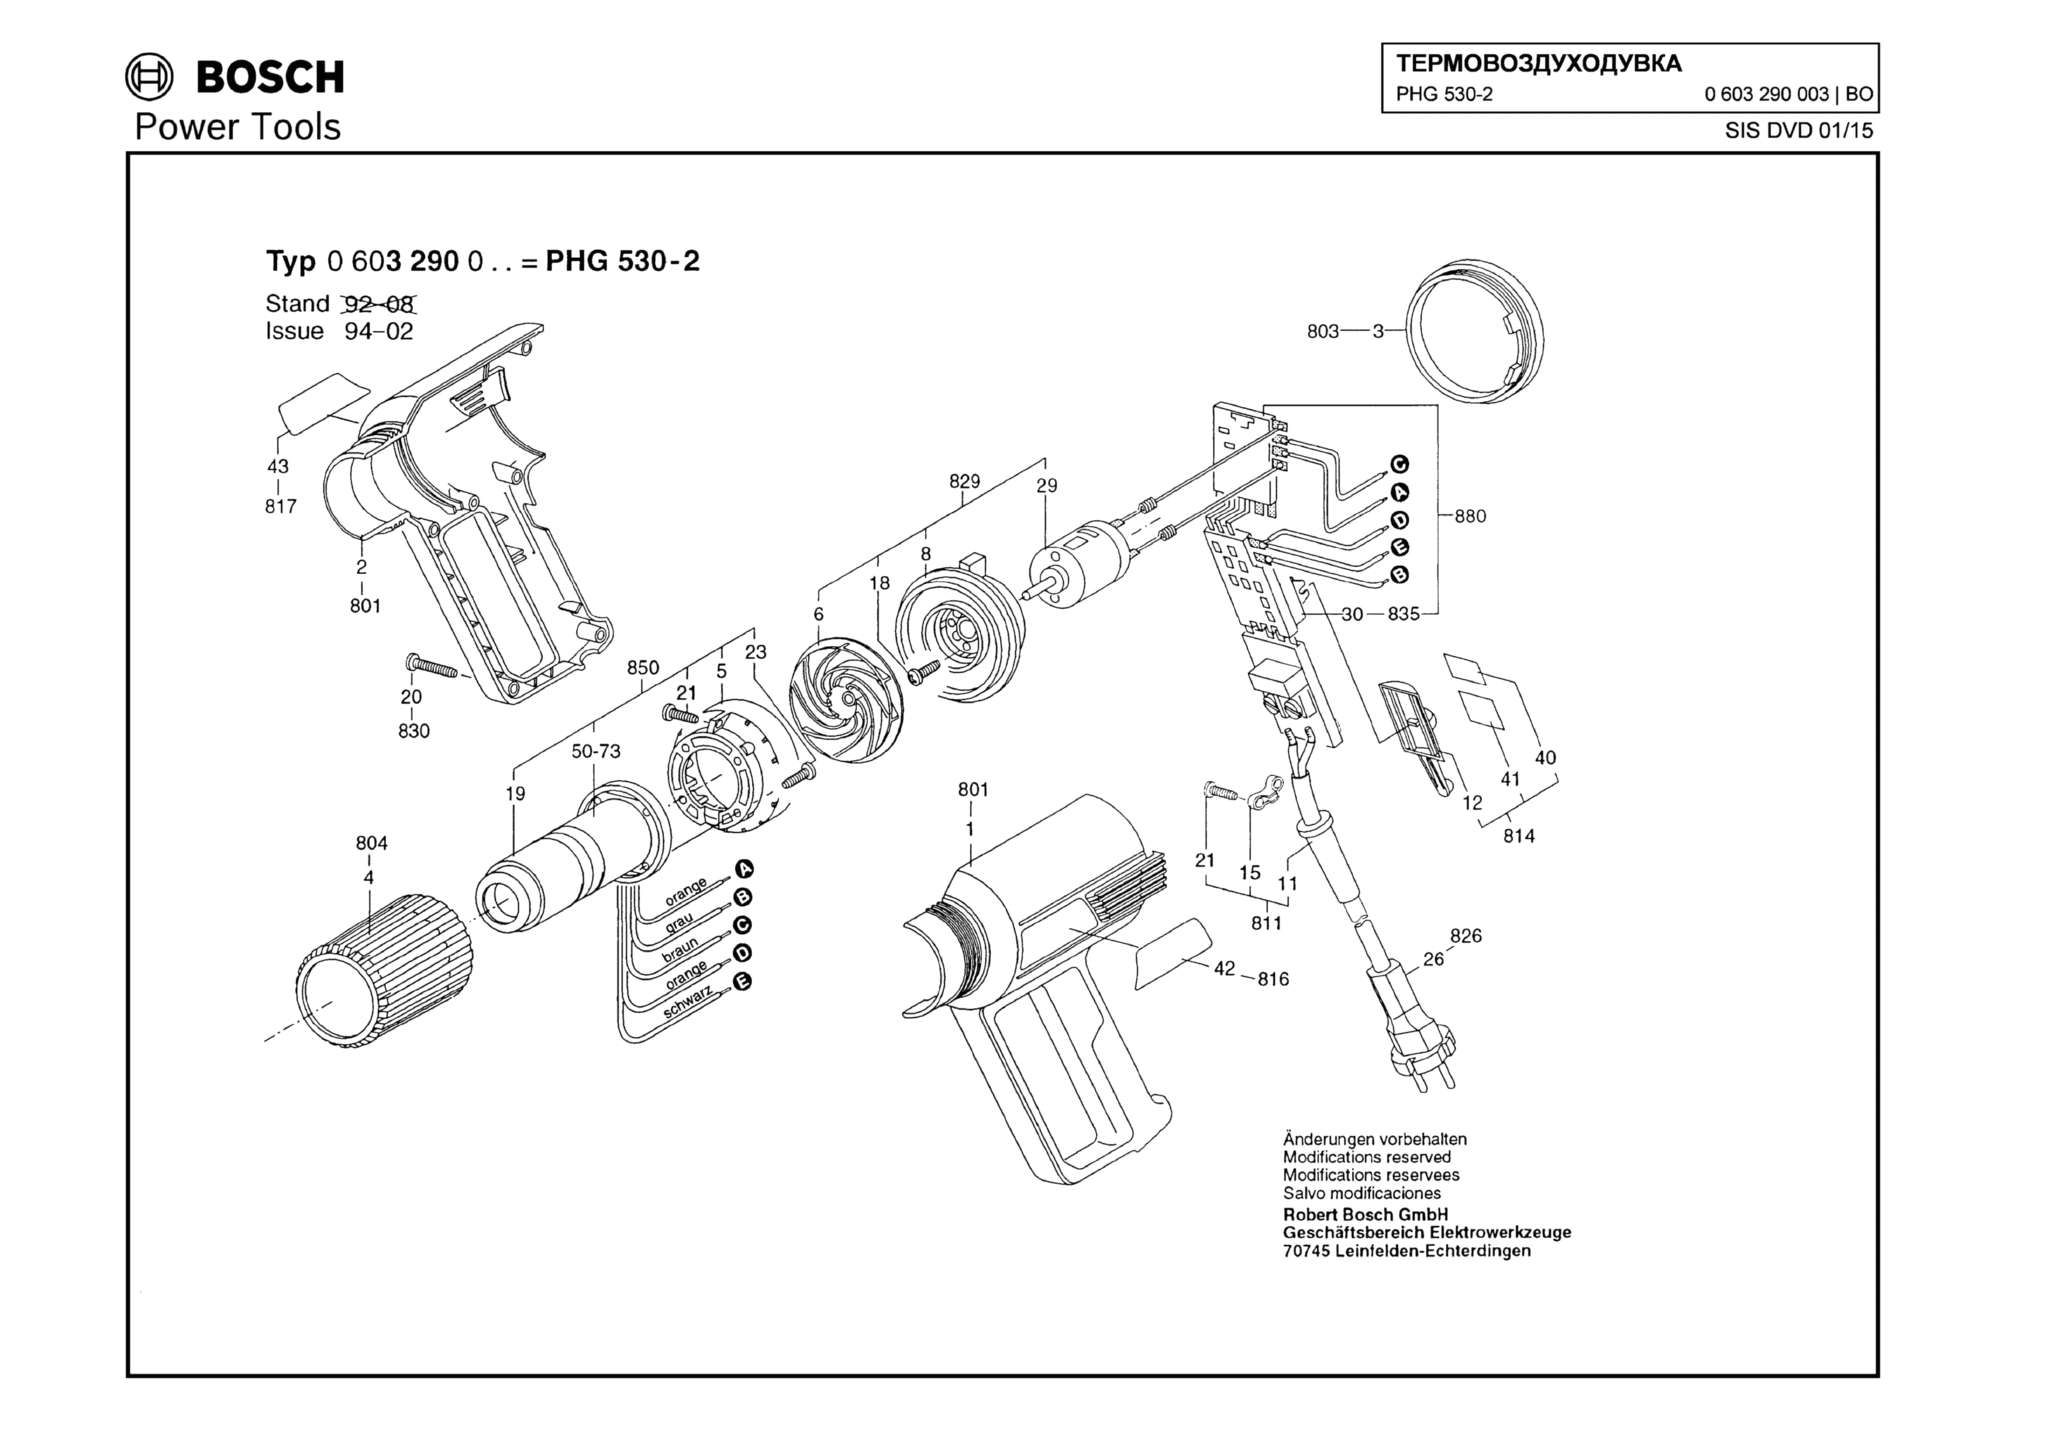 Запчасти, схема и деталировка Bosch PHG 530-2 (ТИП 0603290003)